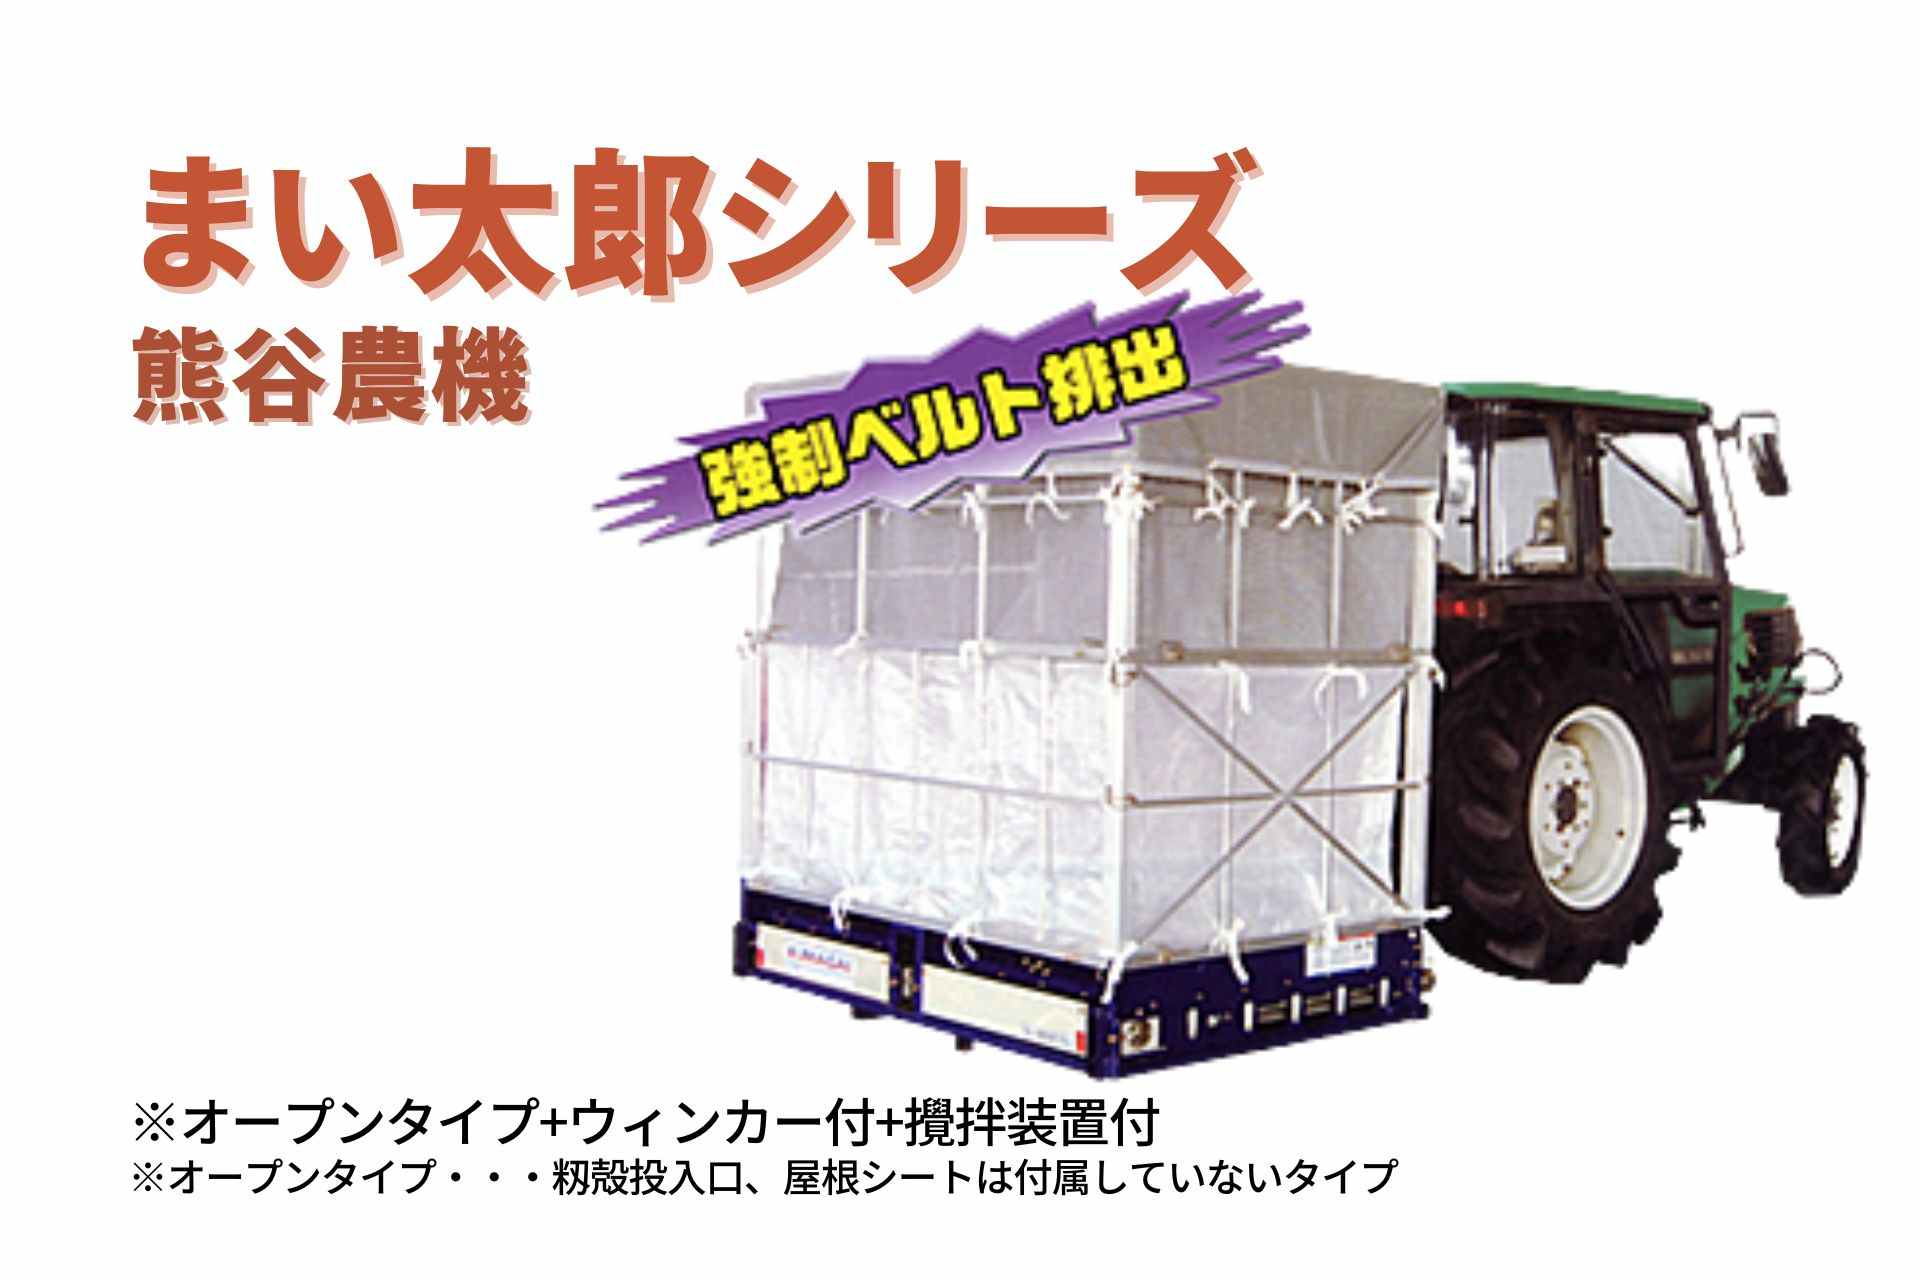 籾殻散布機 まい太郎 オープンタイプ ウィンカー付 攪拌装置付 MTA-40ROW(L) 熊谷農機